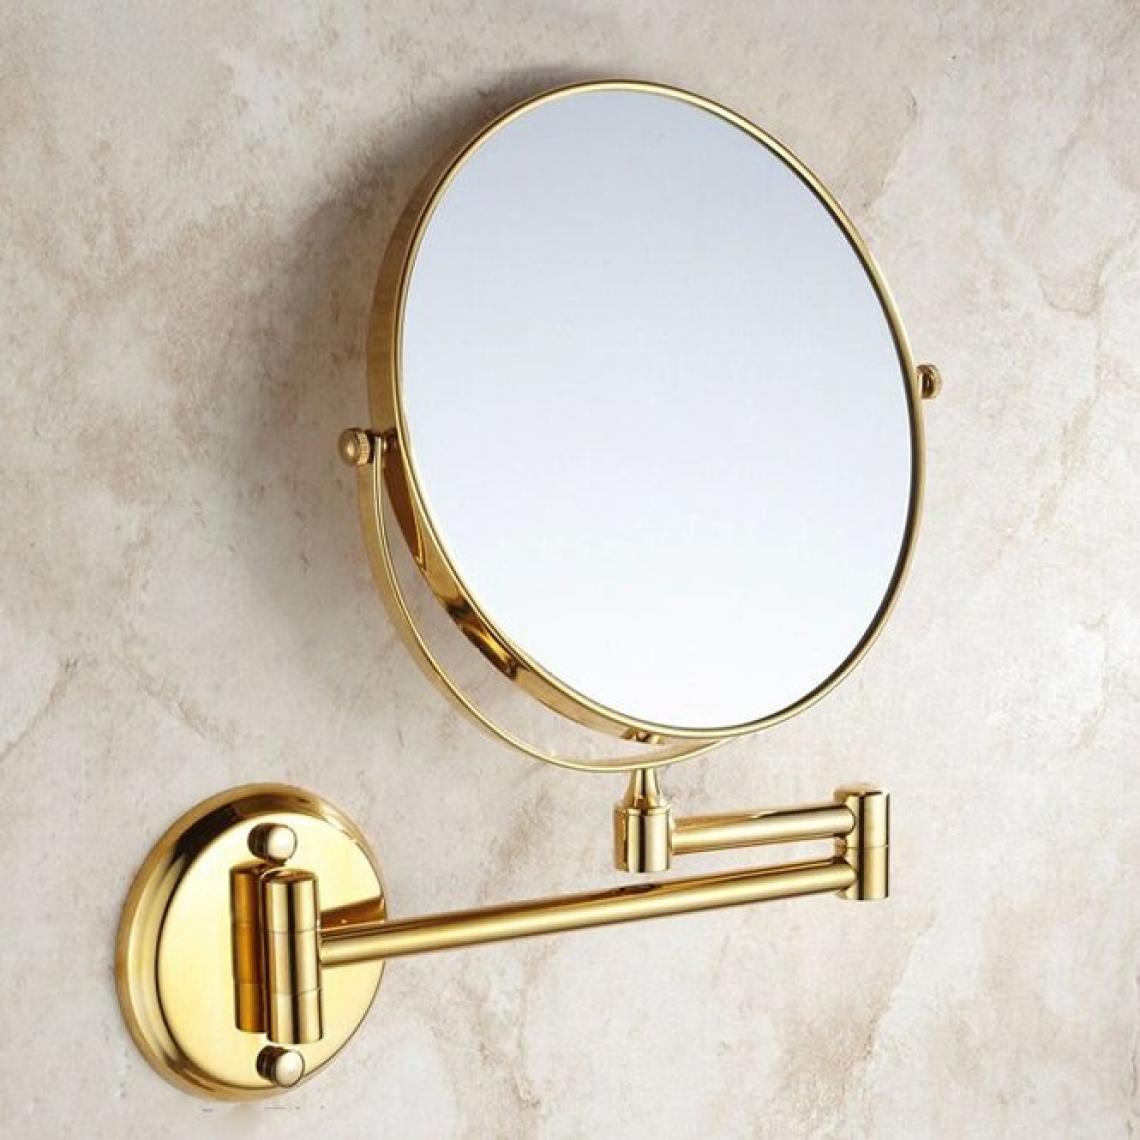 Universal - Miroir de maquillage pliant dans la salle de bains, miroir de beauté rétractable dans la salle de bains de l'hôtel, loupe amovible double face.(Or) - Miroir de salle de bain